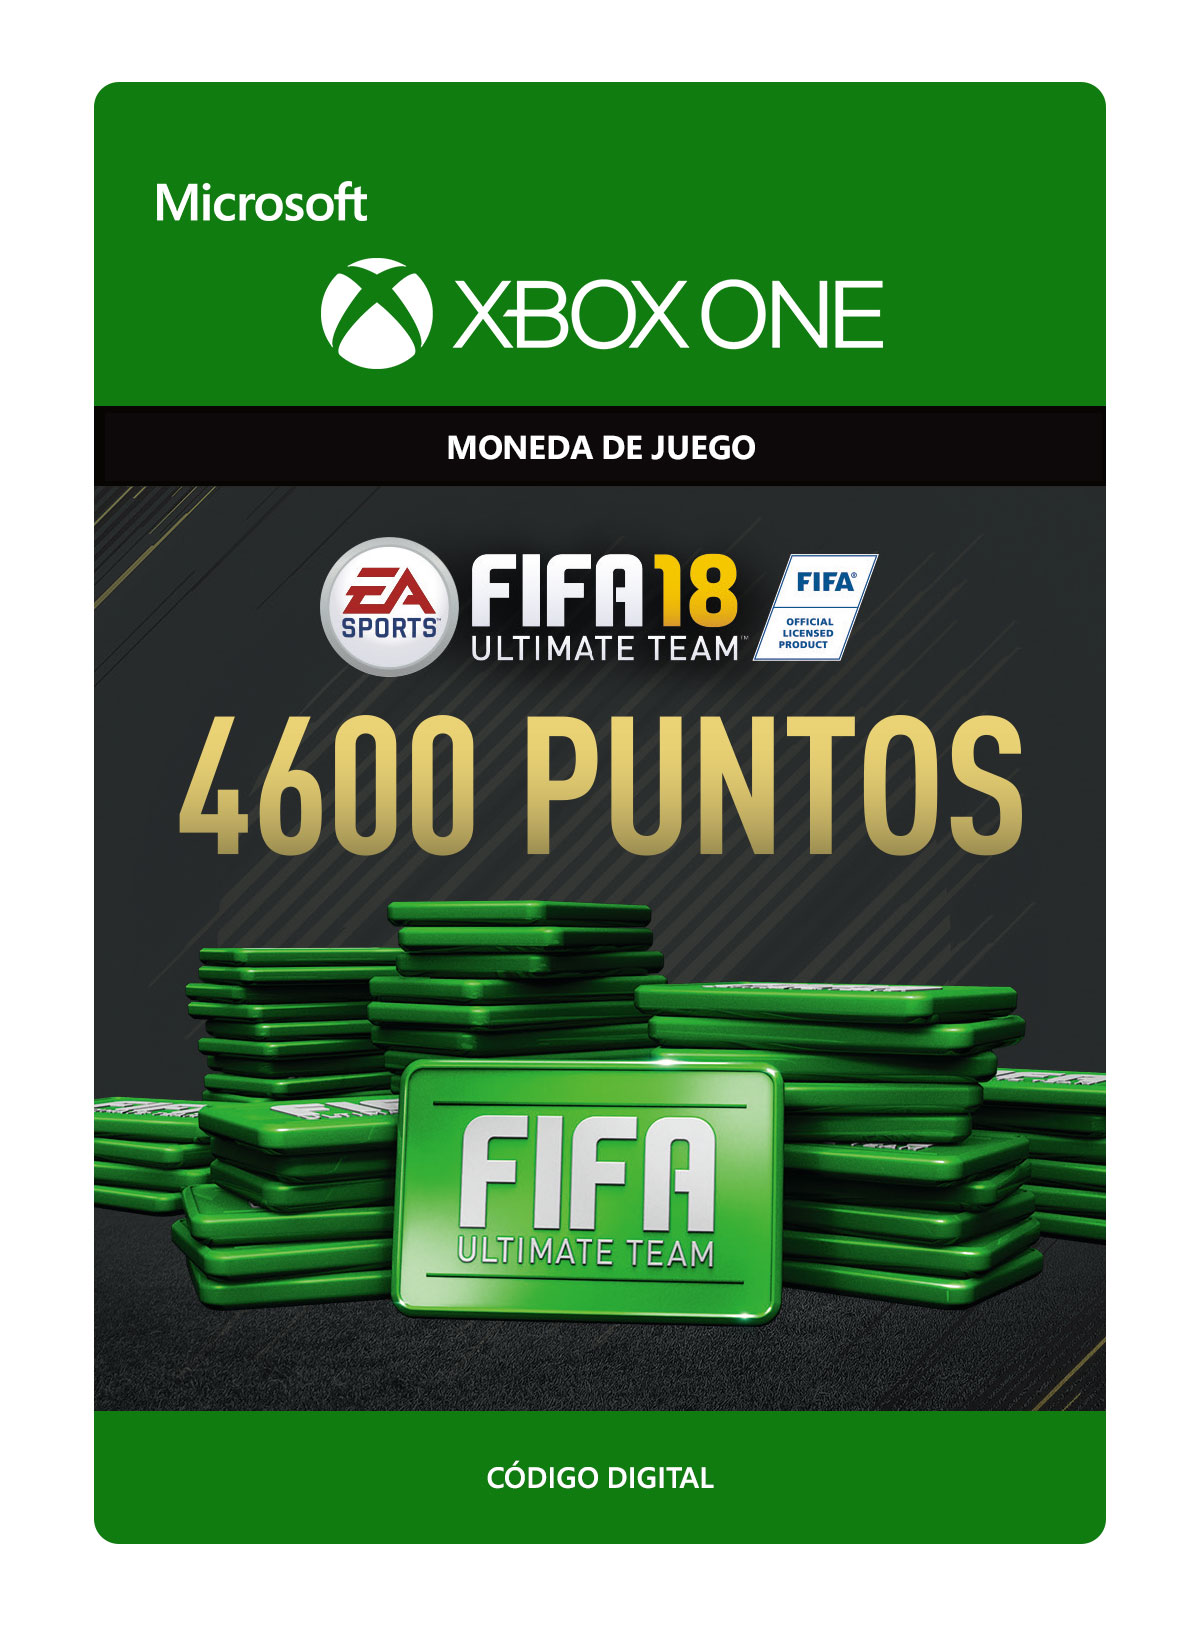 Xbox One - Fifa 18: Ultimate Team Fifa Points 4600 - Creditos/Monedas para Juegos